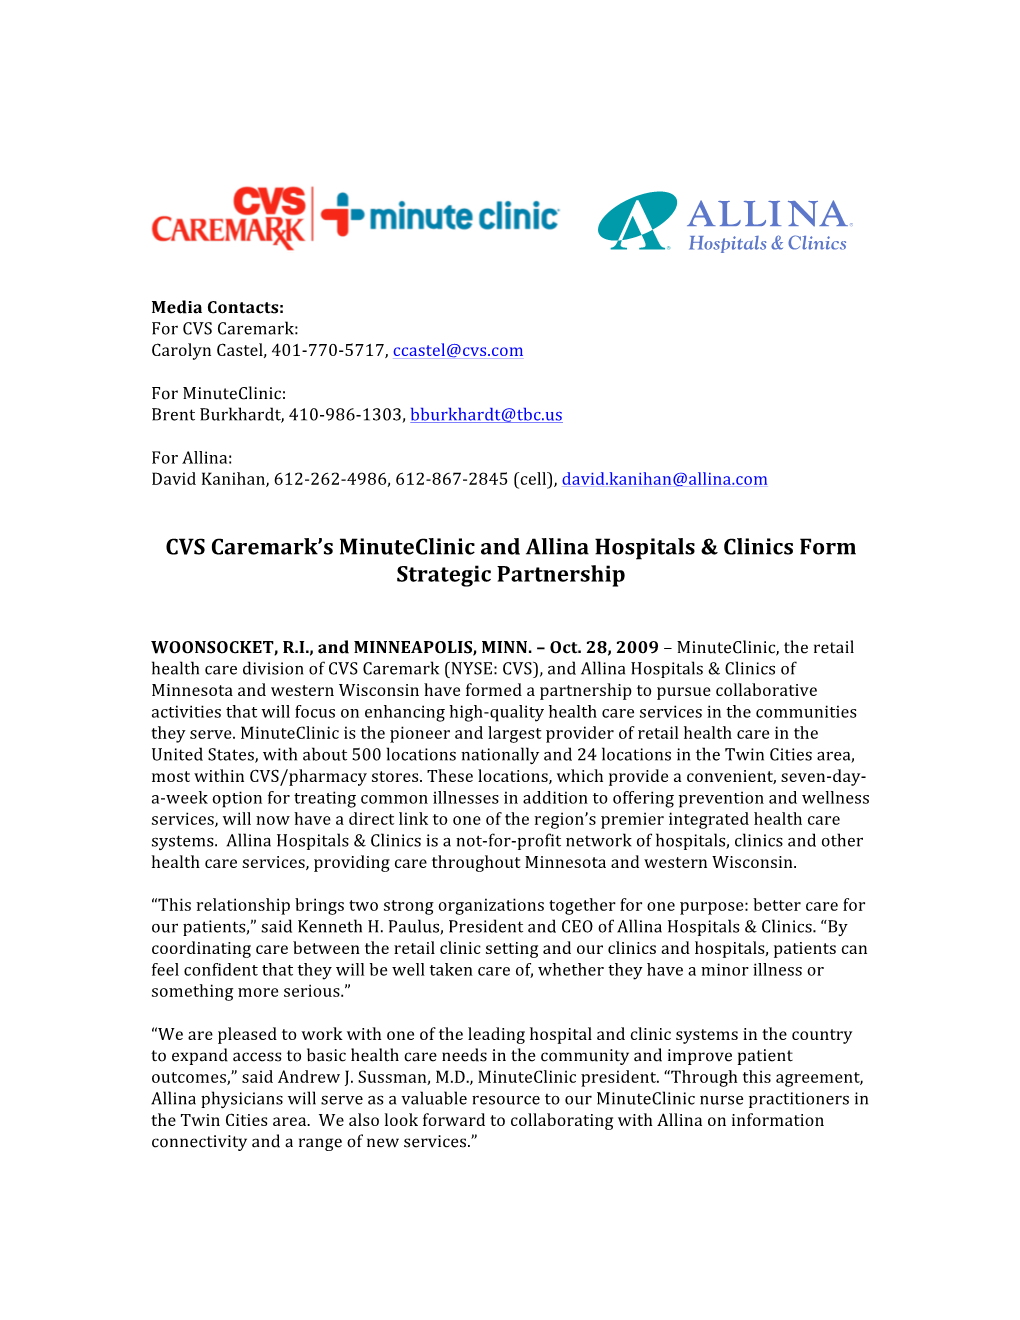 CVS Caremark's Minuteclinic and Allina Hospitals & Clinics Form